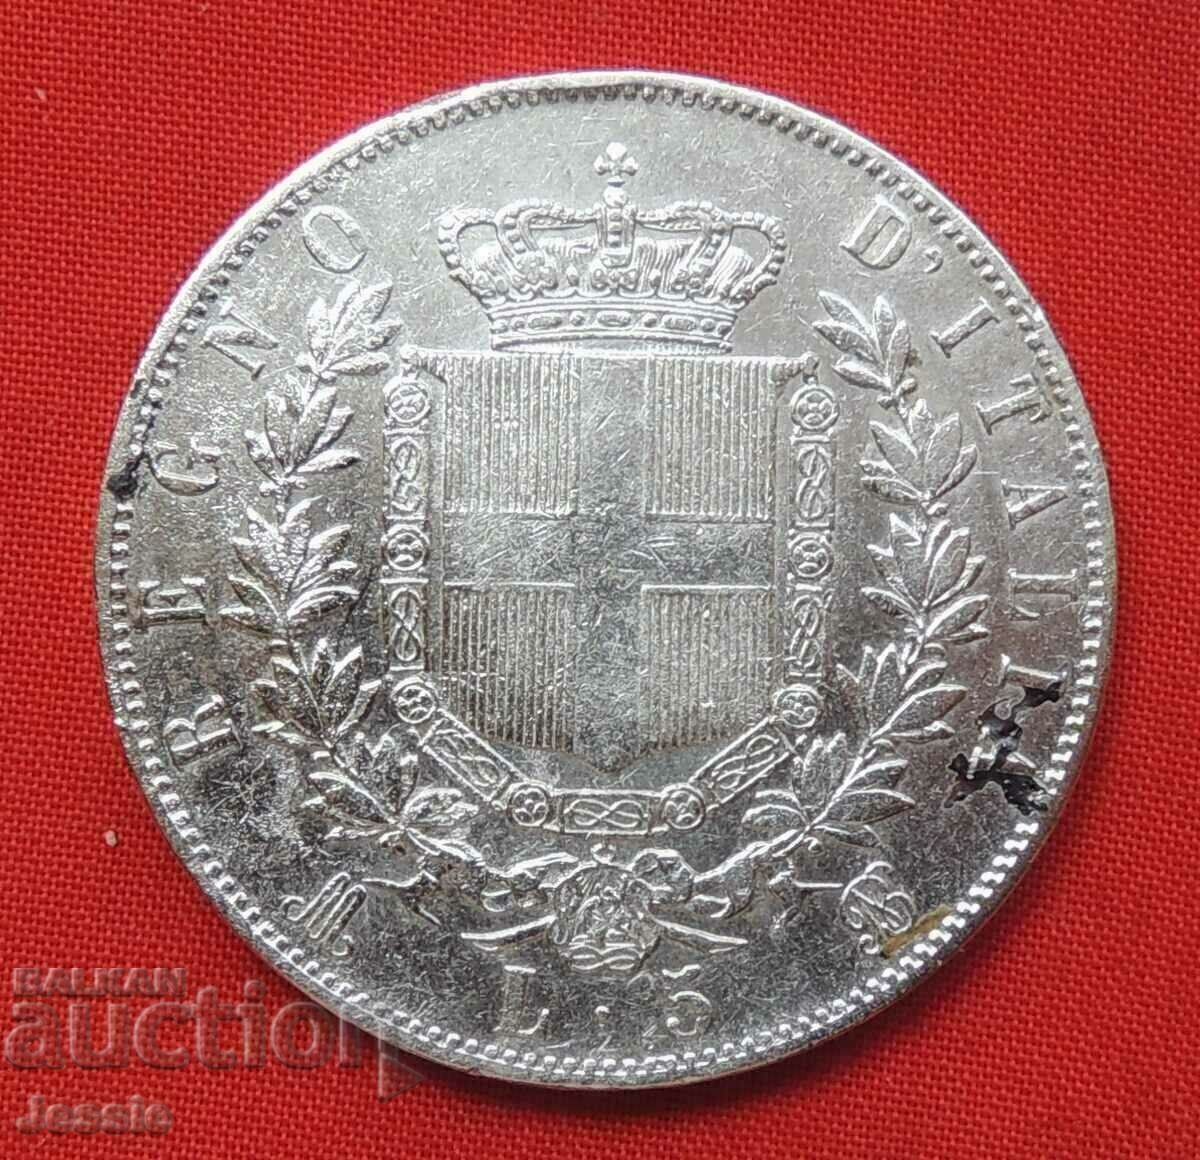 5 Лири 1869 М сребро Италия